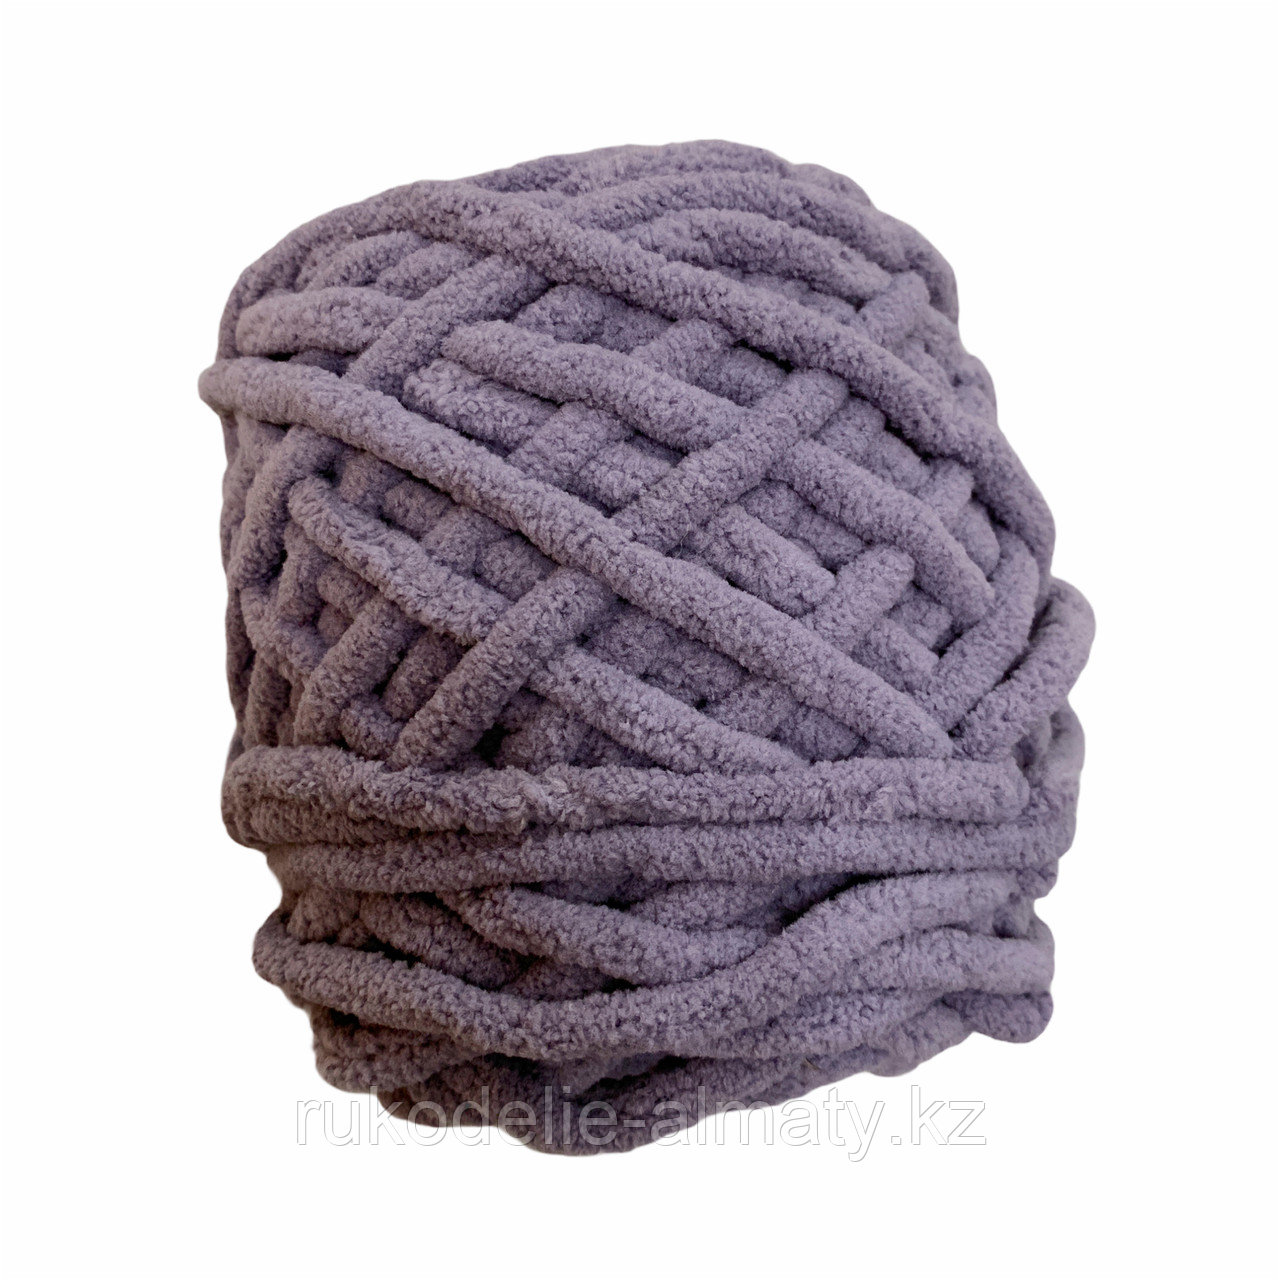 Велюровая пряжа для ручного вязания, толщиной 0,8 мм темно-серый